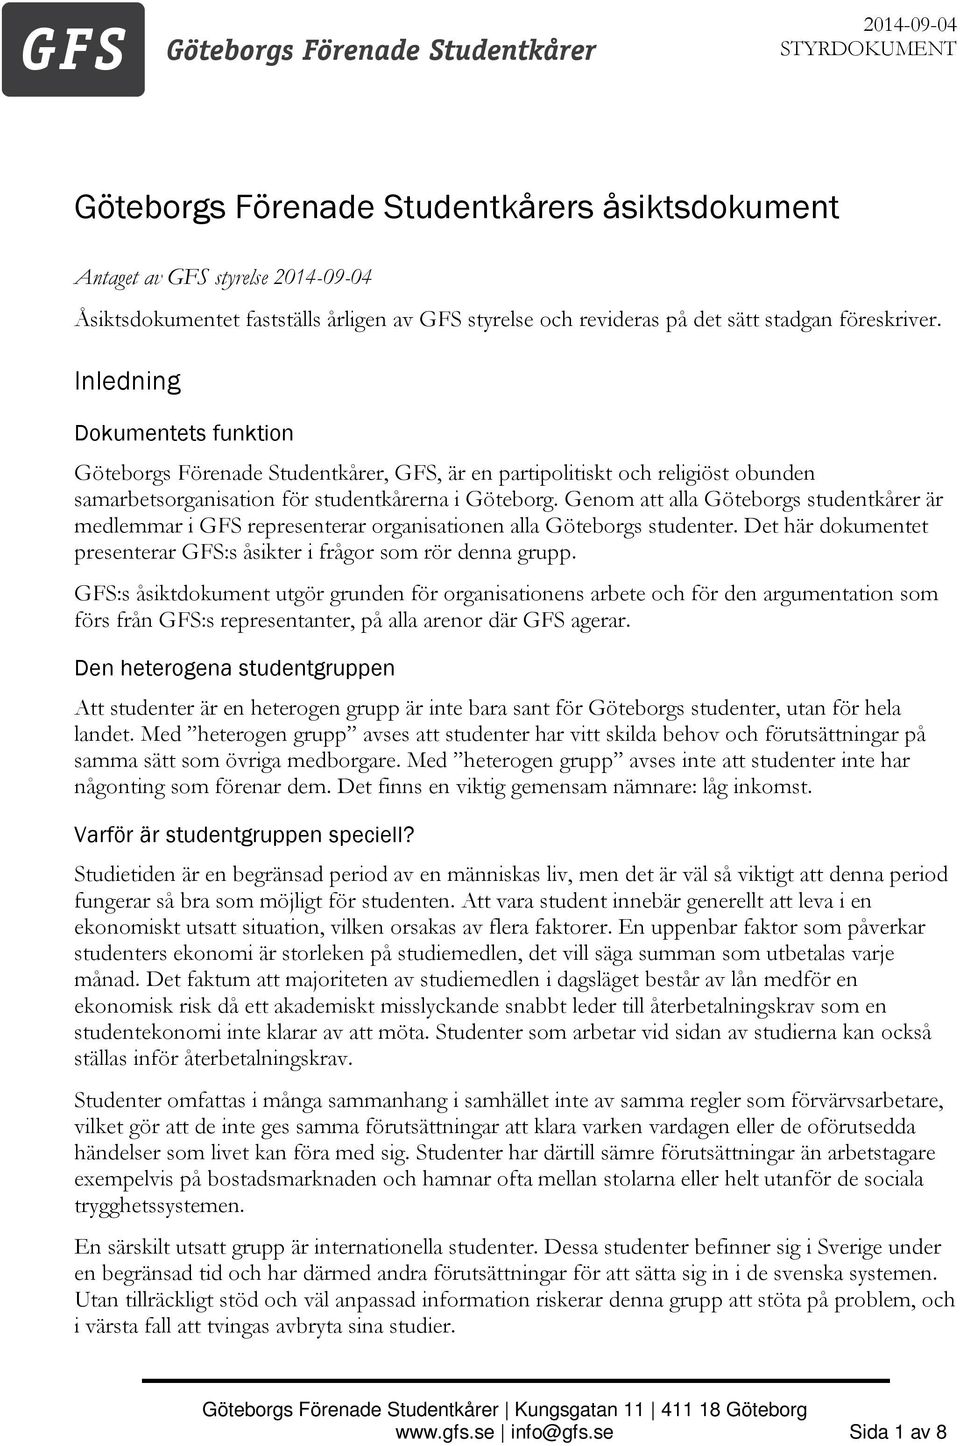 Genom att alla Göteborgs studentkårer är medlemmar i GFS representerar organisationen alla Göteborgs studenter. Det här dokumentet presenterar GFS:s åsikter i frågor som rör denna grupp.